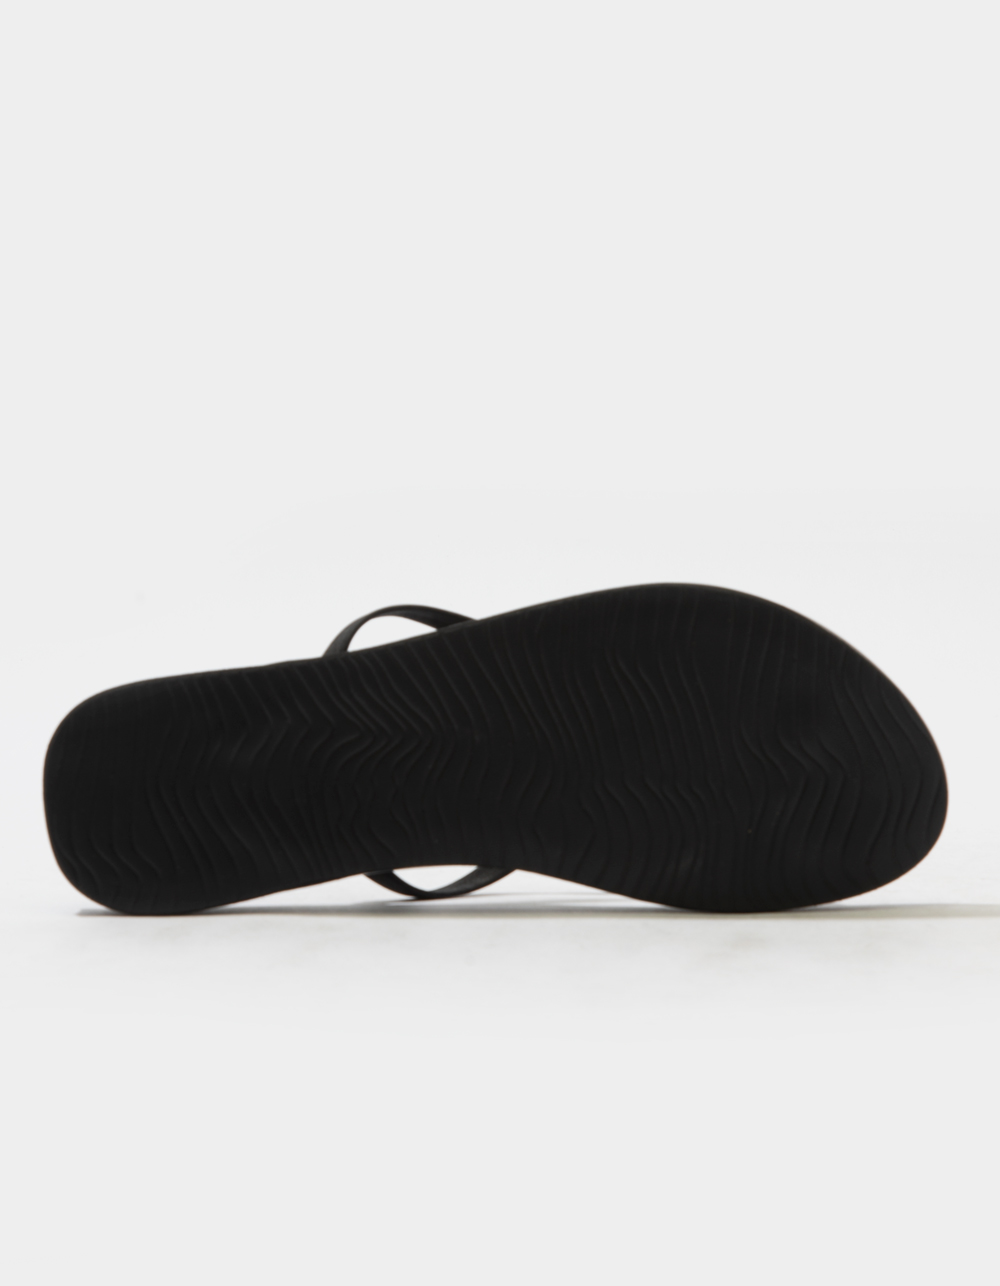 Reef Cushion Bounce Court Flip-Flop Sandals - Black 10M